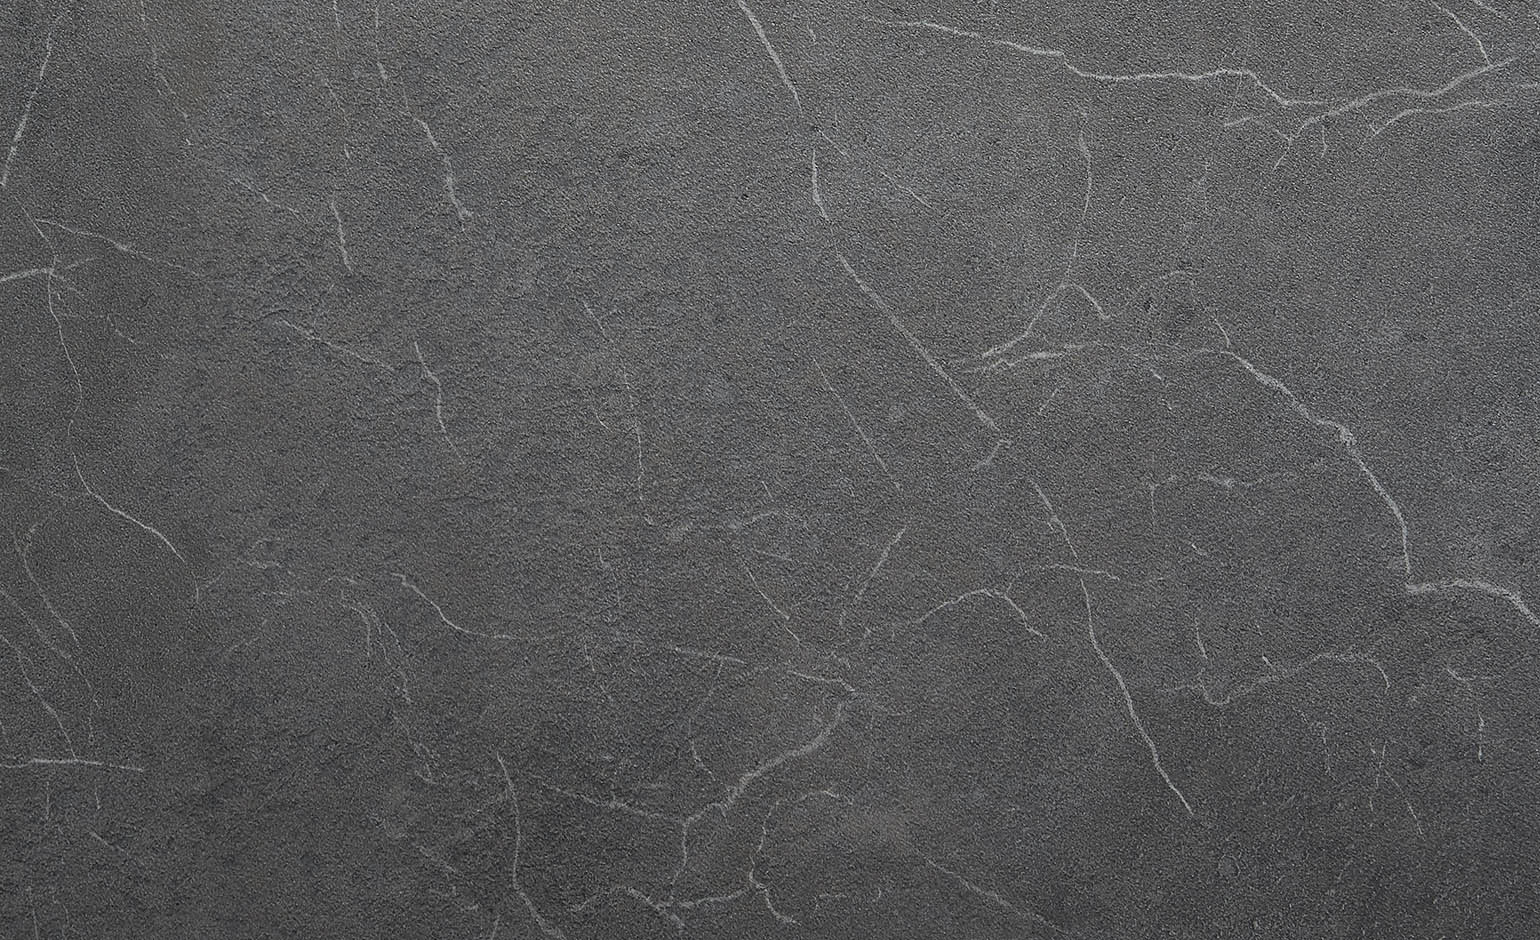  Sol  vinyle Blacktex aspect marbre  anthracite rouleau 4m 